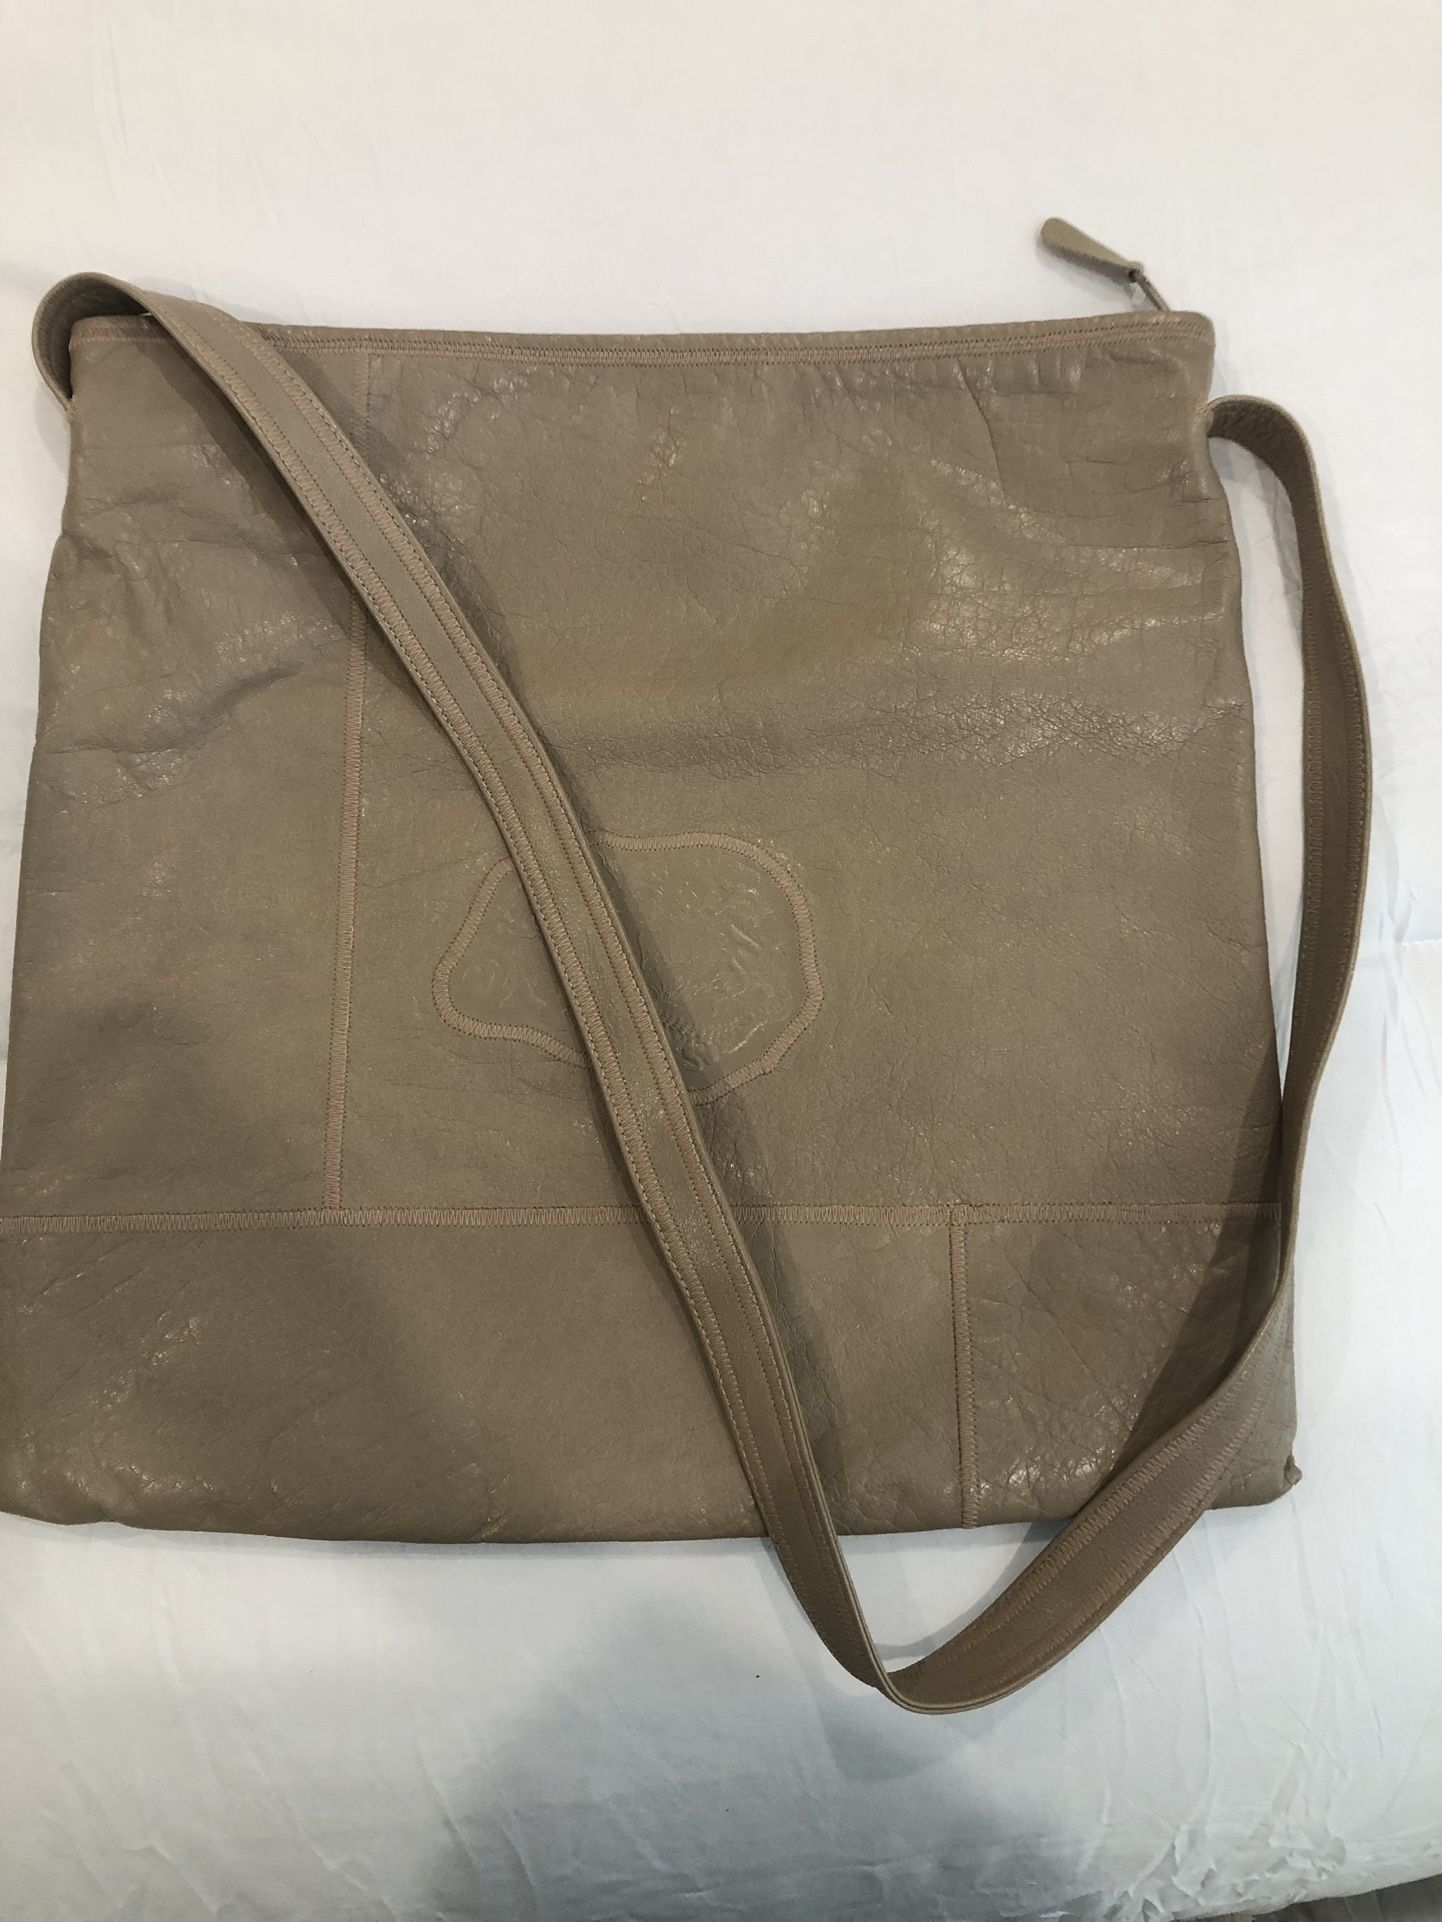 Carlos Falchi Tan Leather Bag - NEVER USED